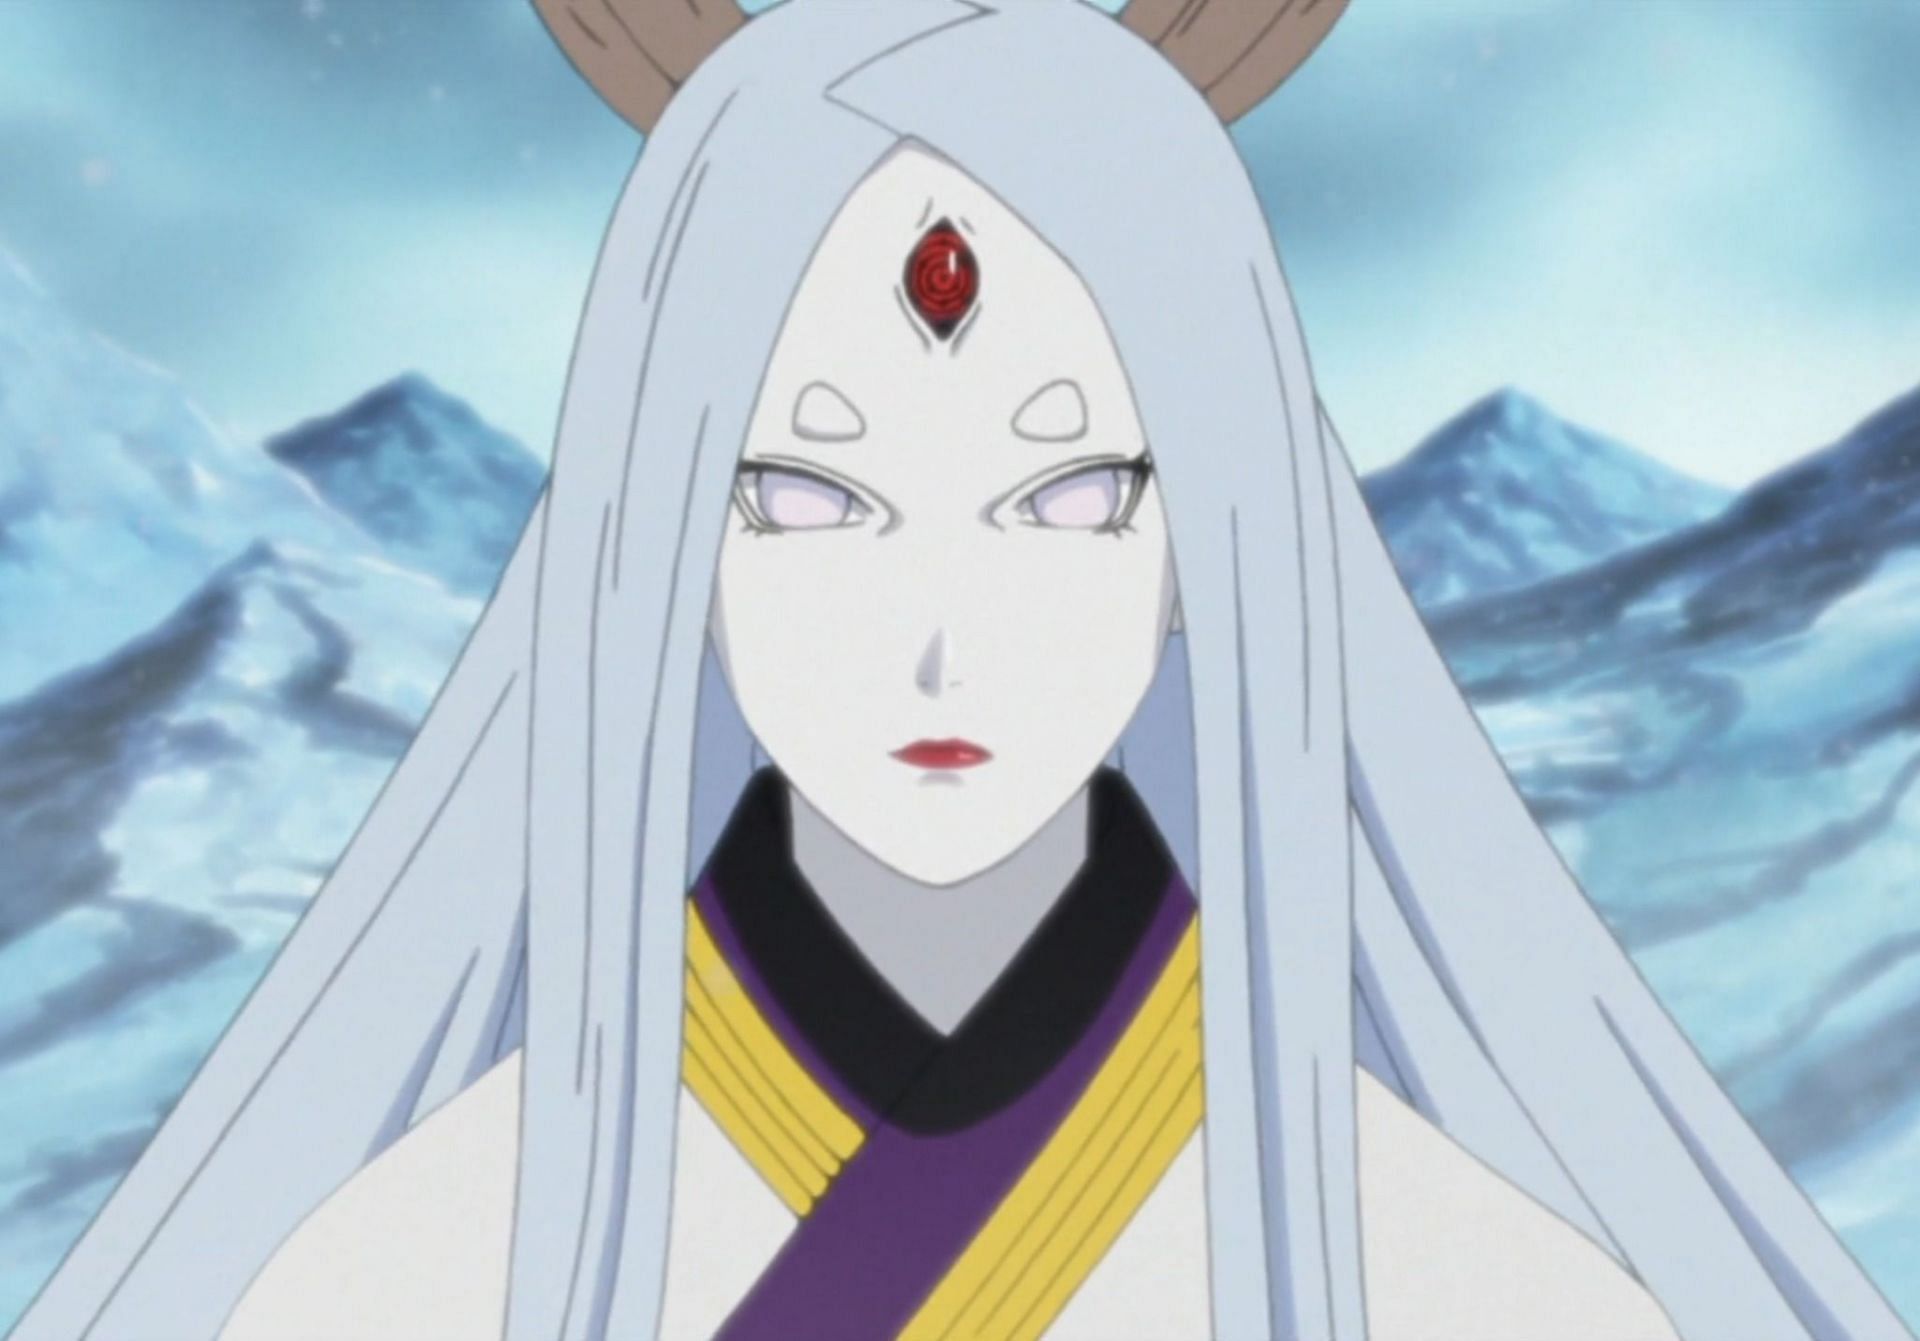 Kaguya Otsutsuki as seen in the Naruto anime (Image via Studio Pierrot)